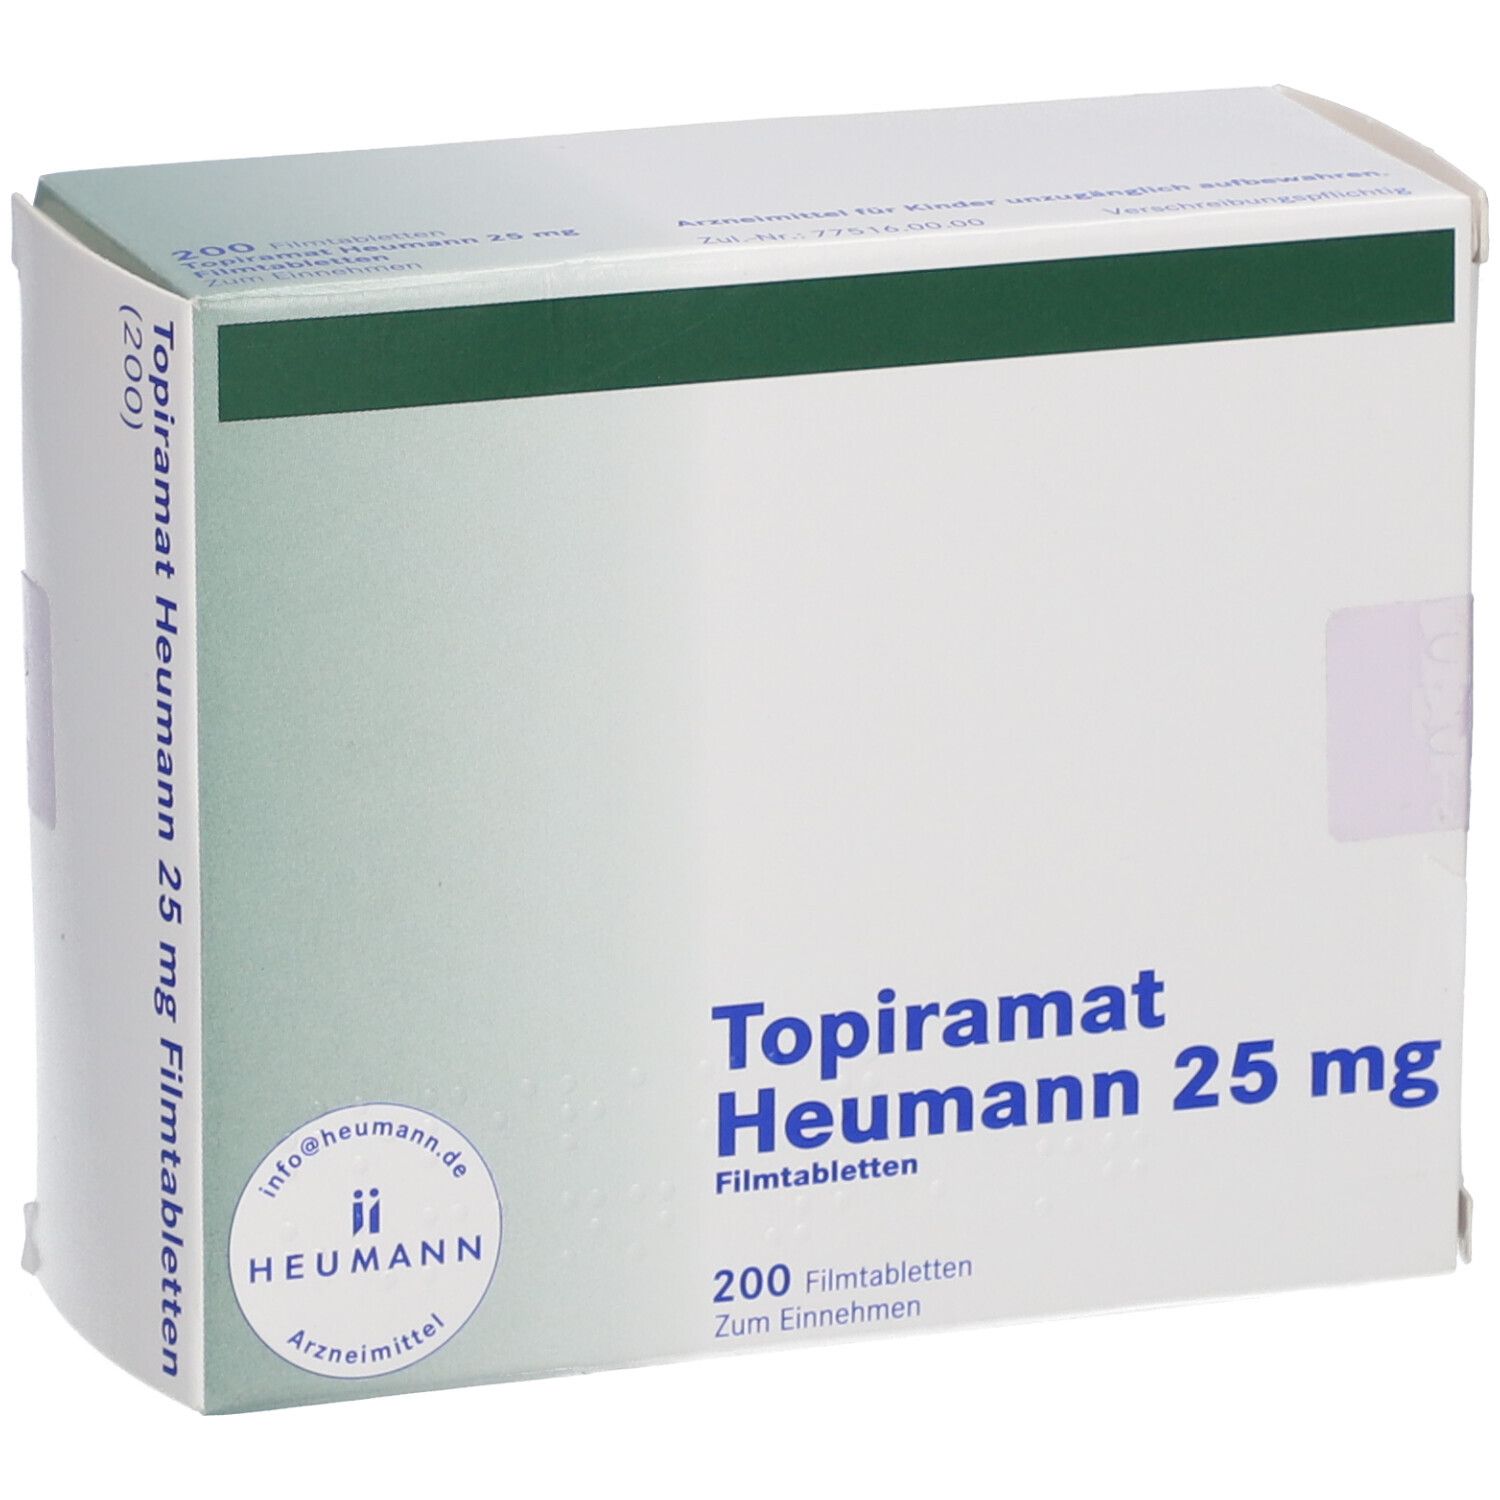 Topiramat Heumann 25 mg